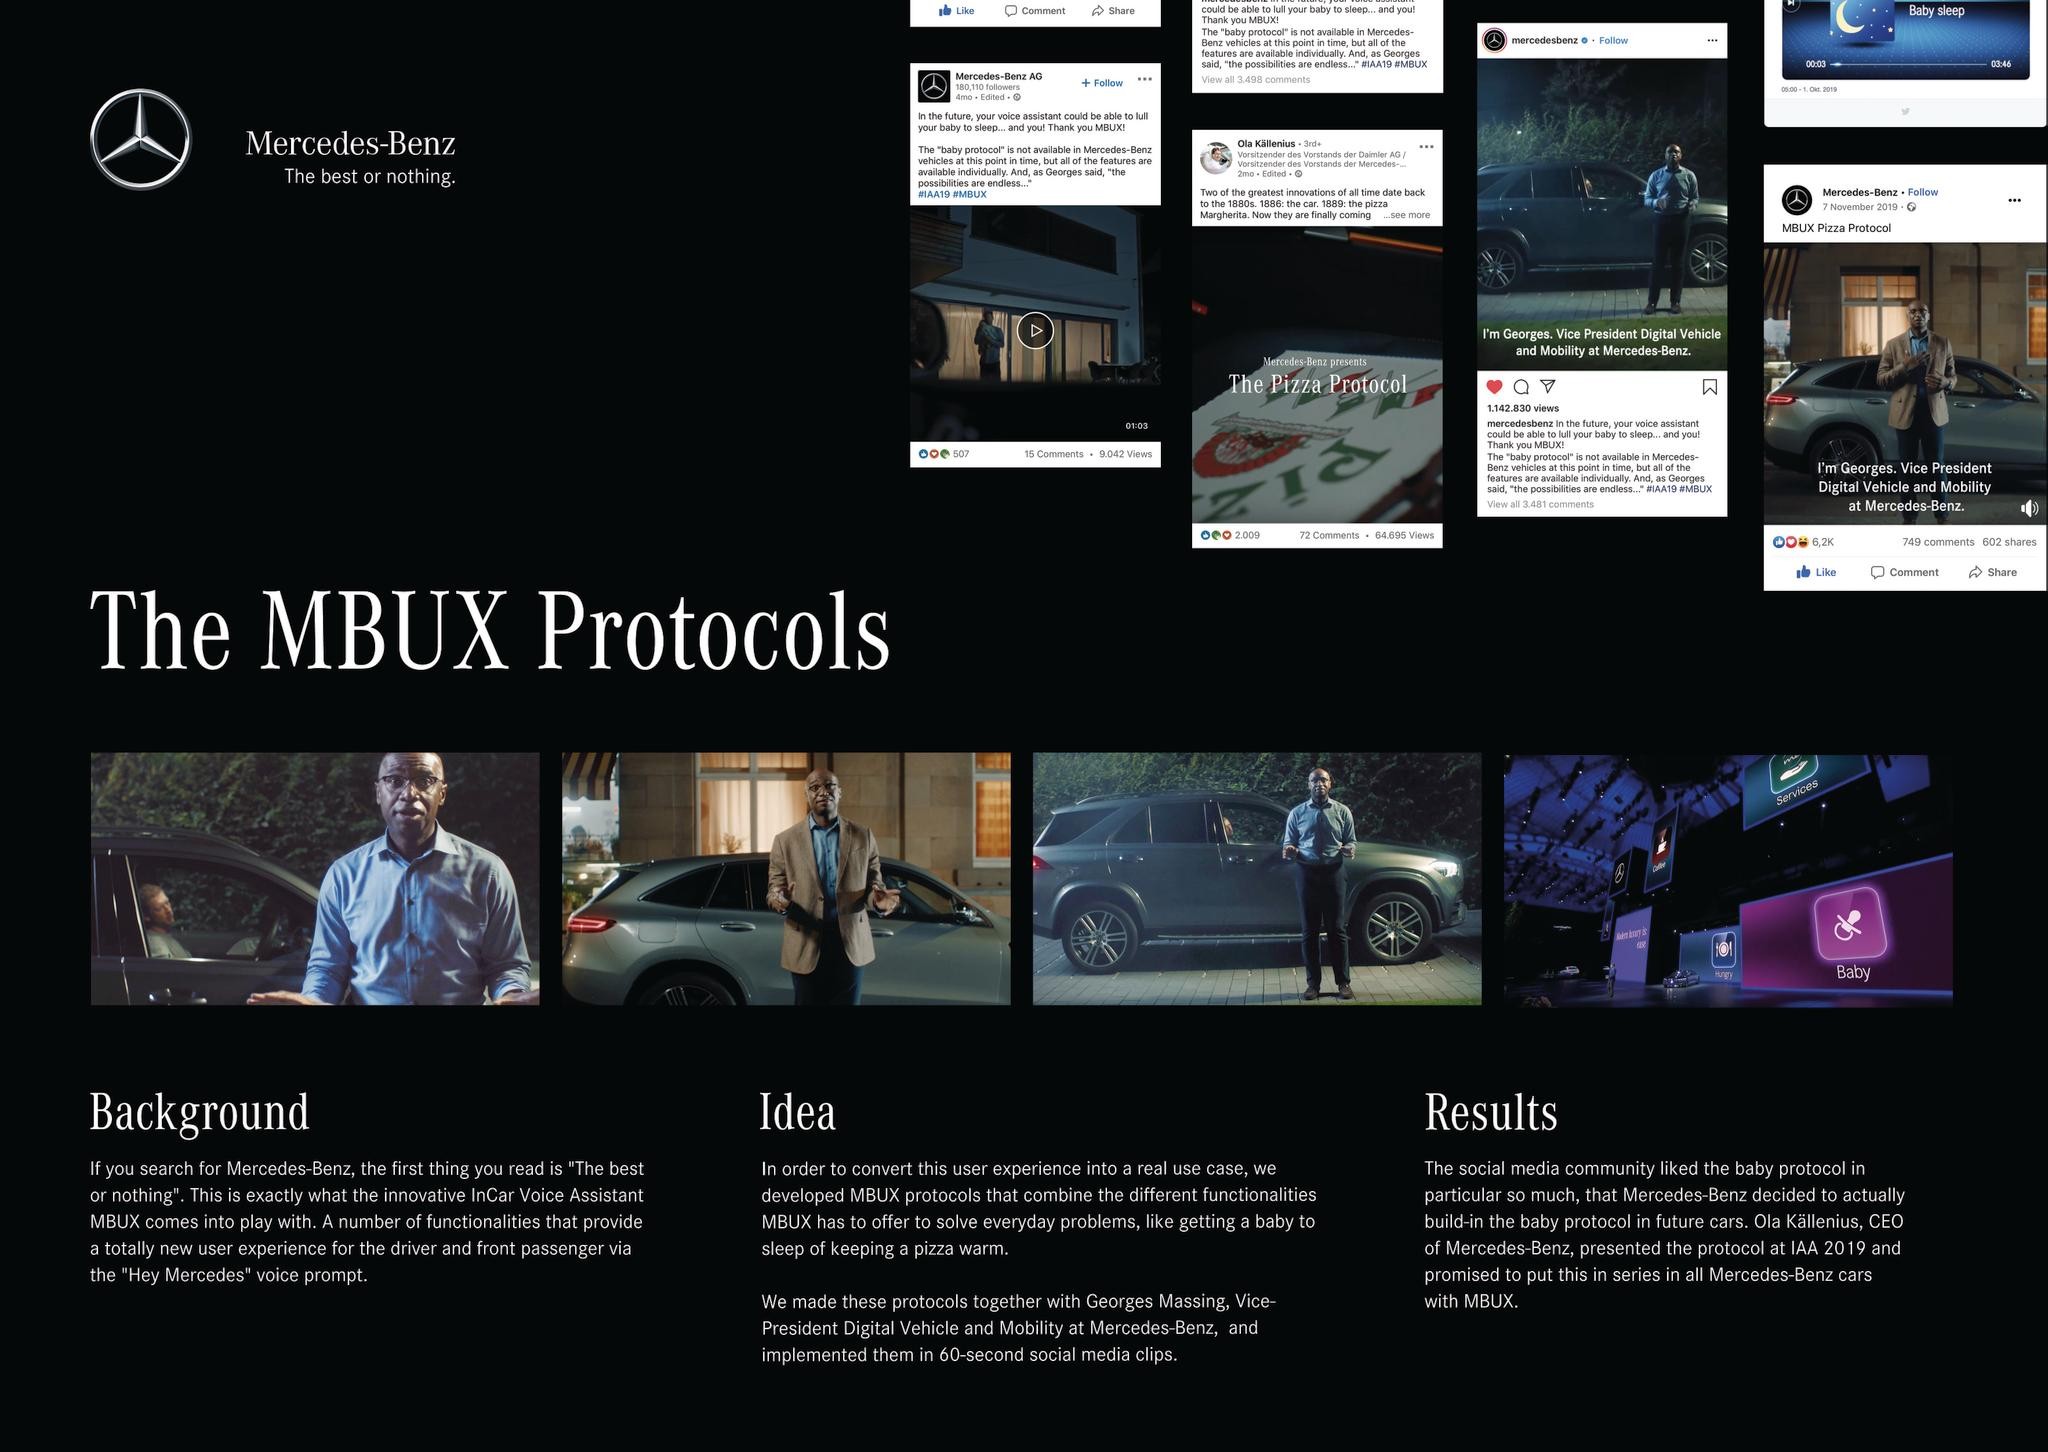 The MBUX Protocols